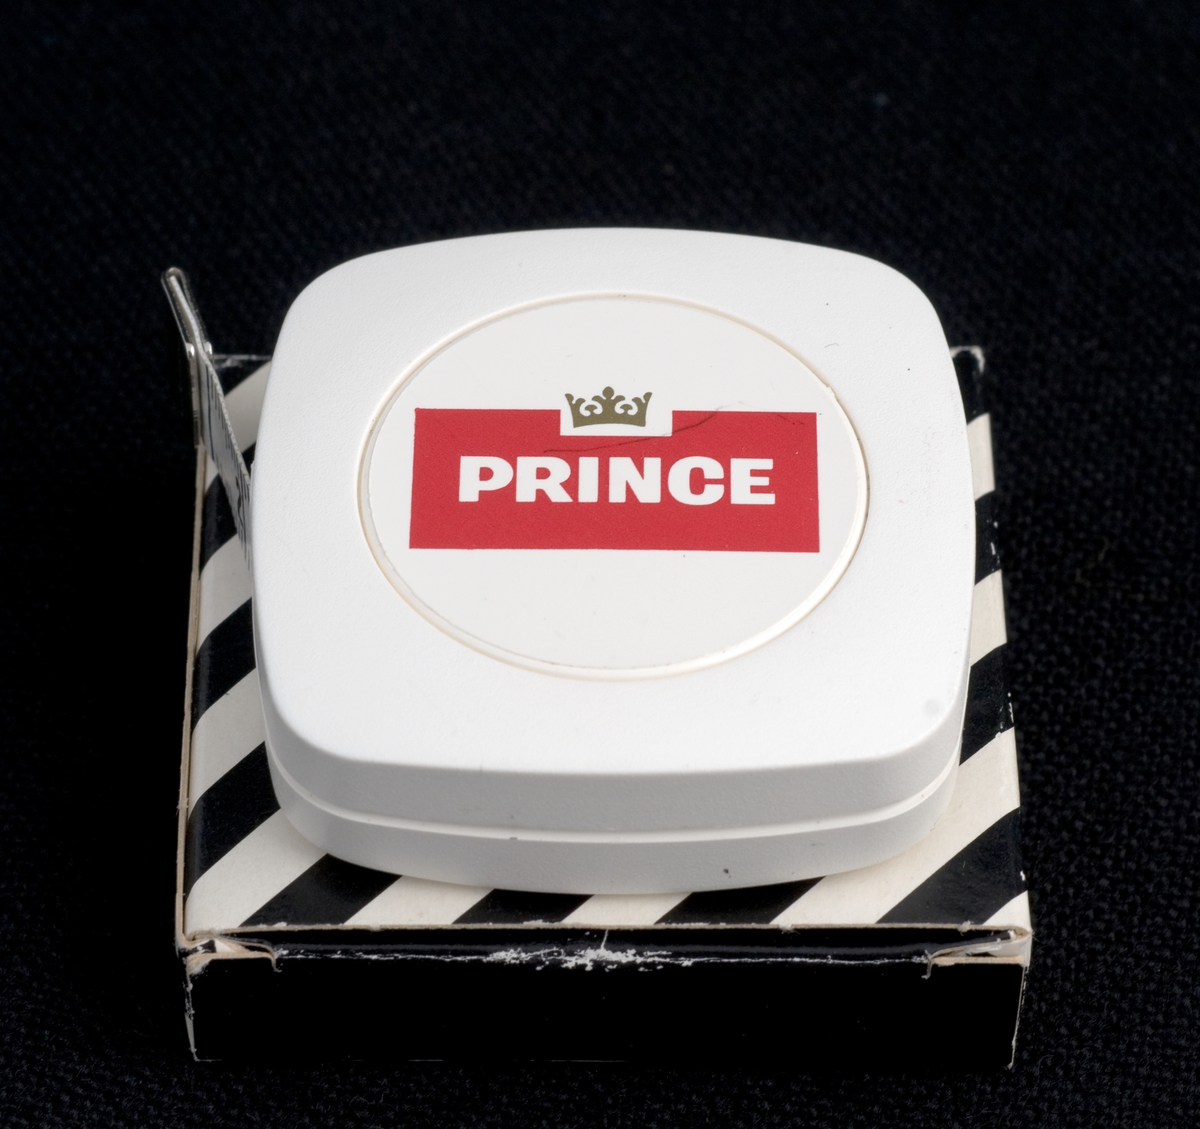 Målebånd i eske med reklame for Prince sigaretter.